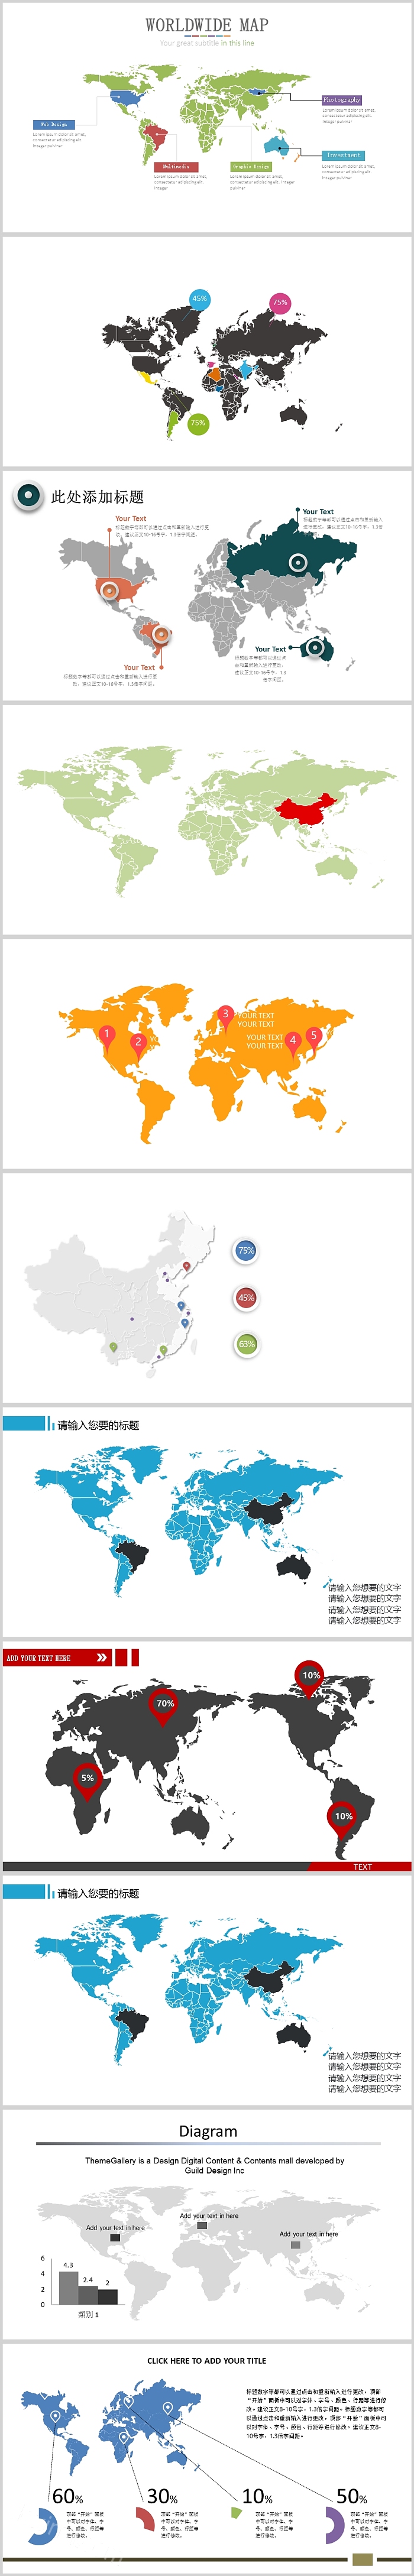 中国地图世界地图ppt地图模板